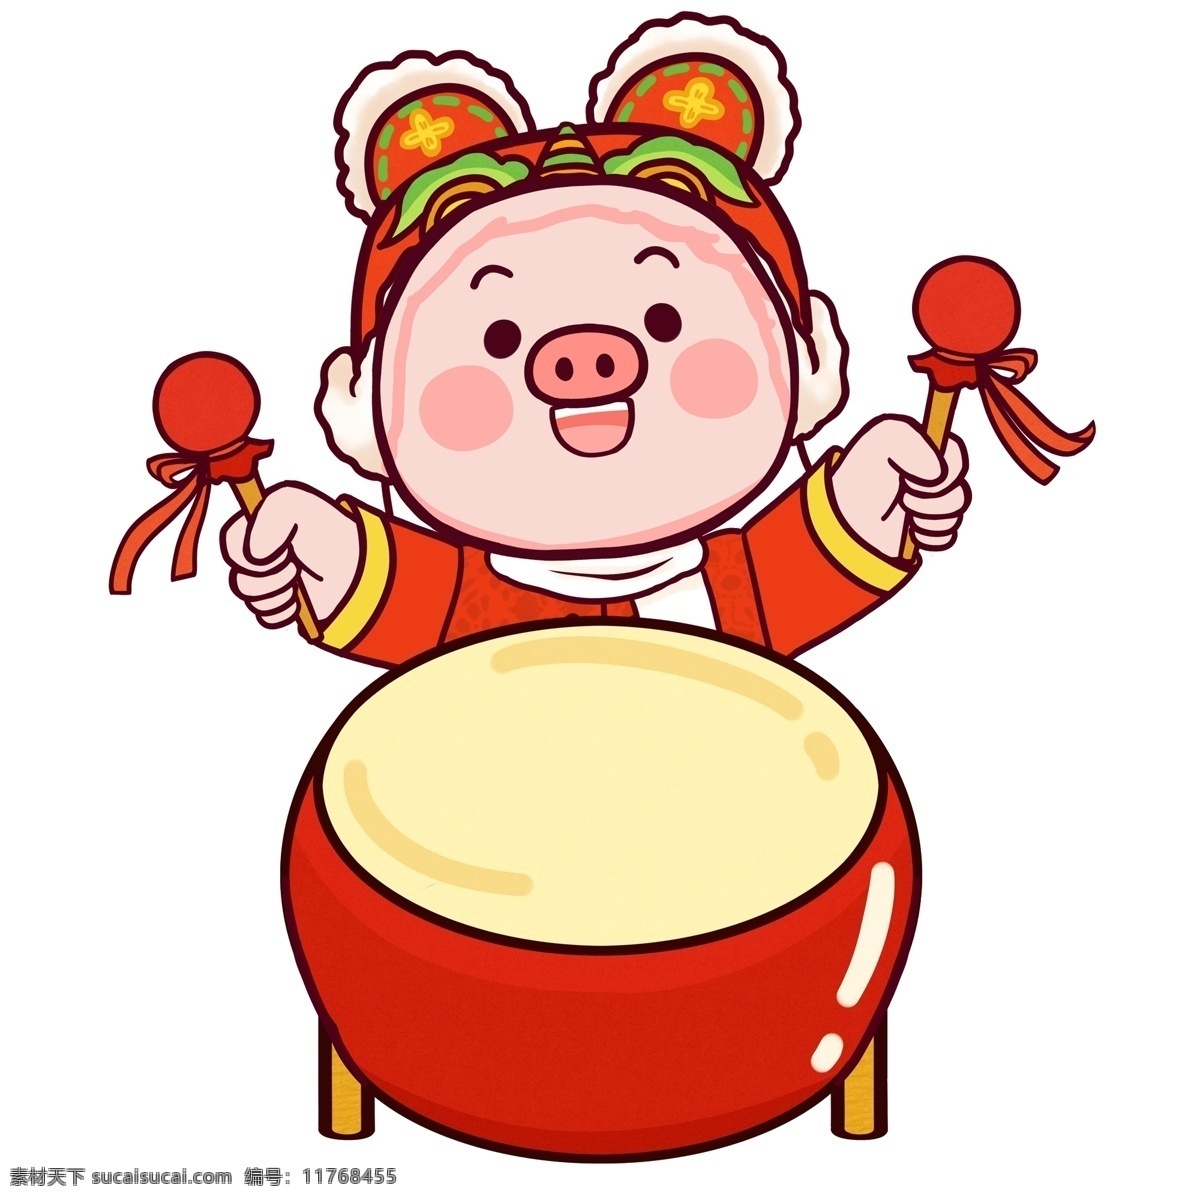 卡通 击鼓 贺 新春 潮 漫 可爱 喜庆 中国风 春节 插画 小猪 打鼓 潮漫 猪猪 新年 猪年 2019年 小猪形象 猪年形象